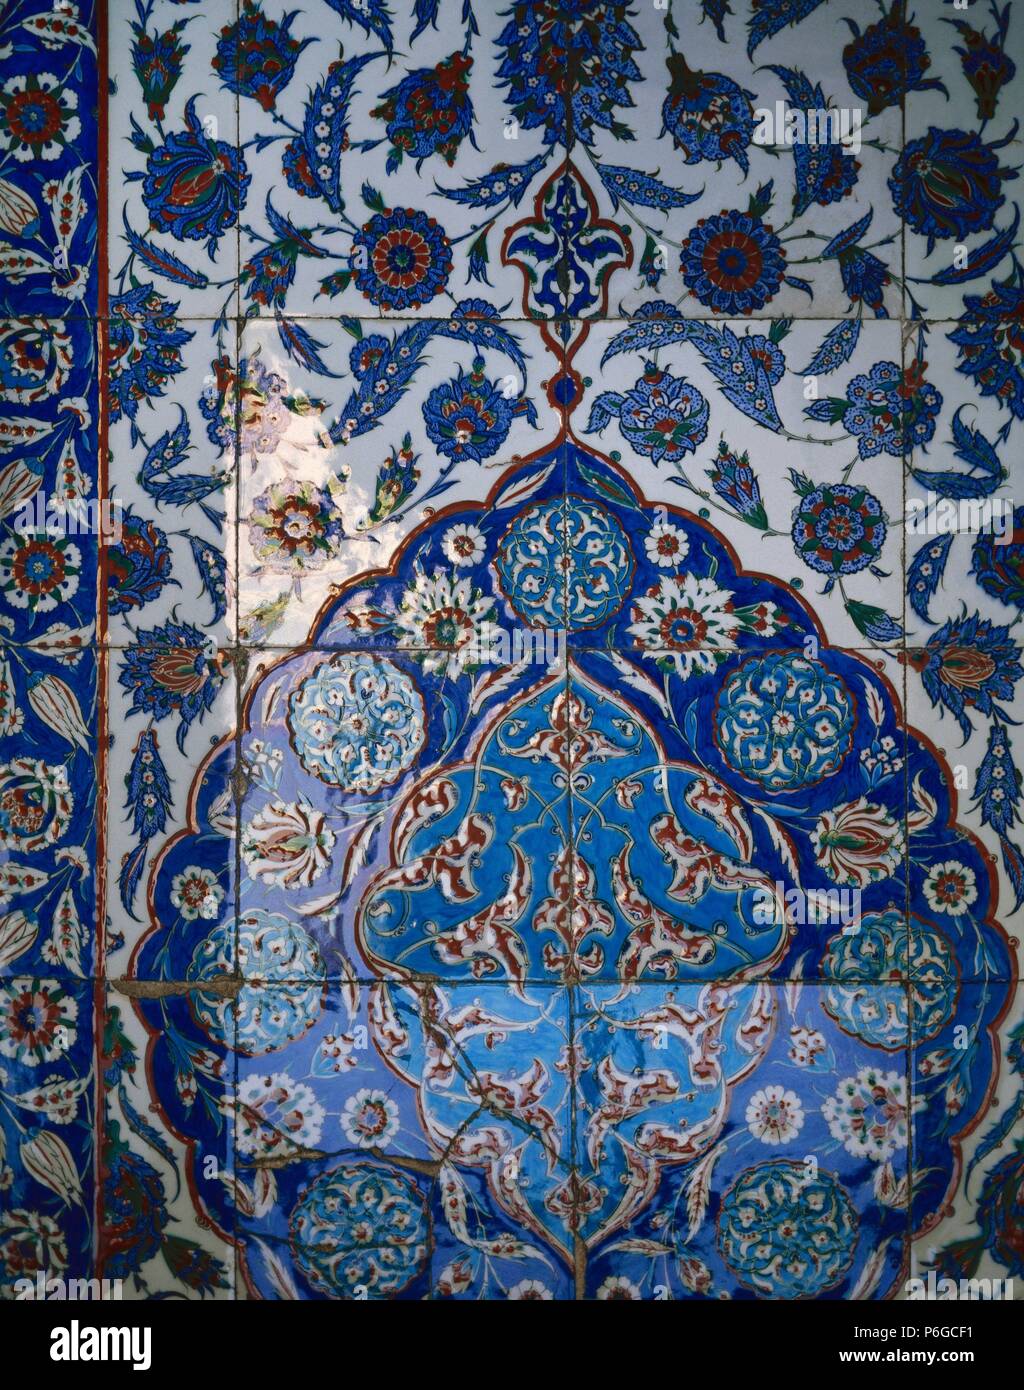 ARTE ISLAMICO-ESTILO OTOMANO. TURQUIA. Detalle de los AZULEJOS procedentes de la famosa fábrica de IZNIK, que decoran el interior de la TÜRBE o MAUSOLEO DE SOLIMAN EL MAGNIFICO, obra realizada por SINAN en 1566. ESTAMBUL. Turquía. Stock Photo